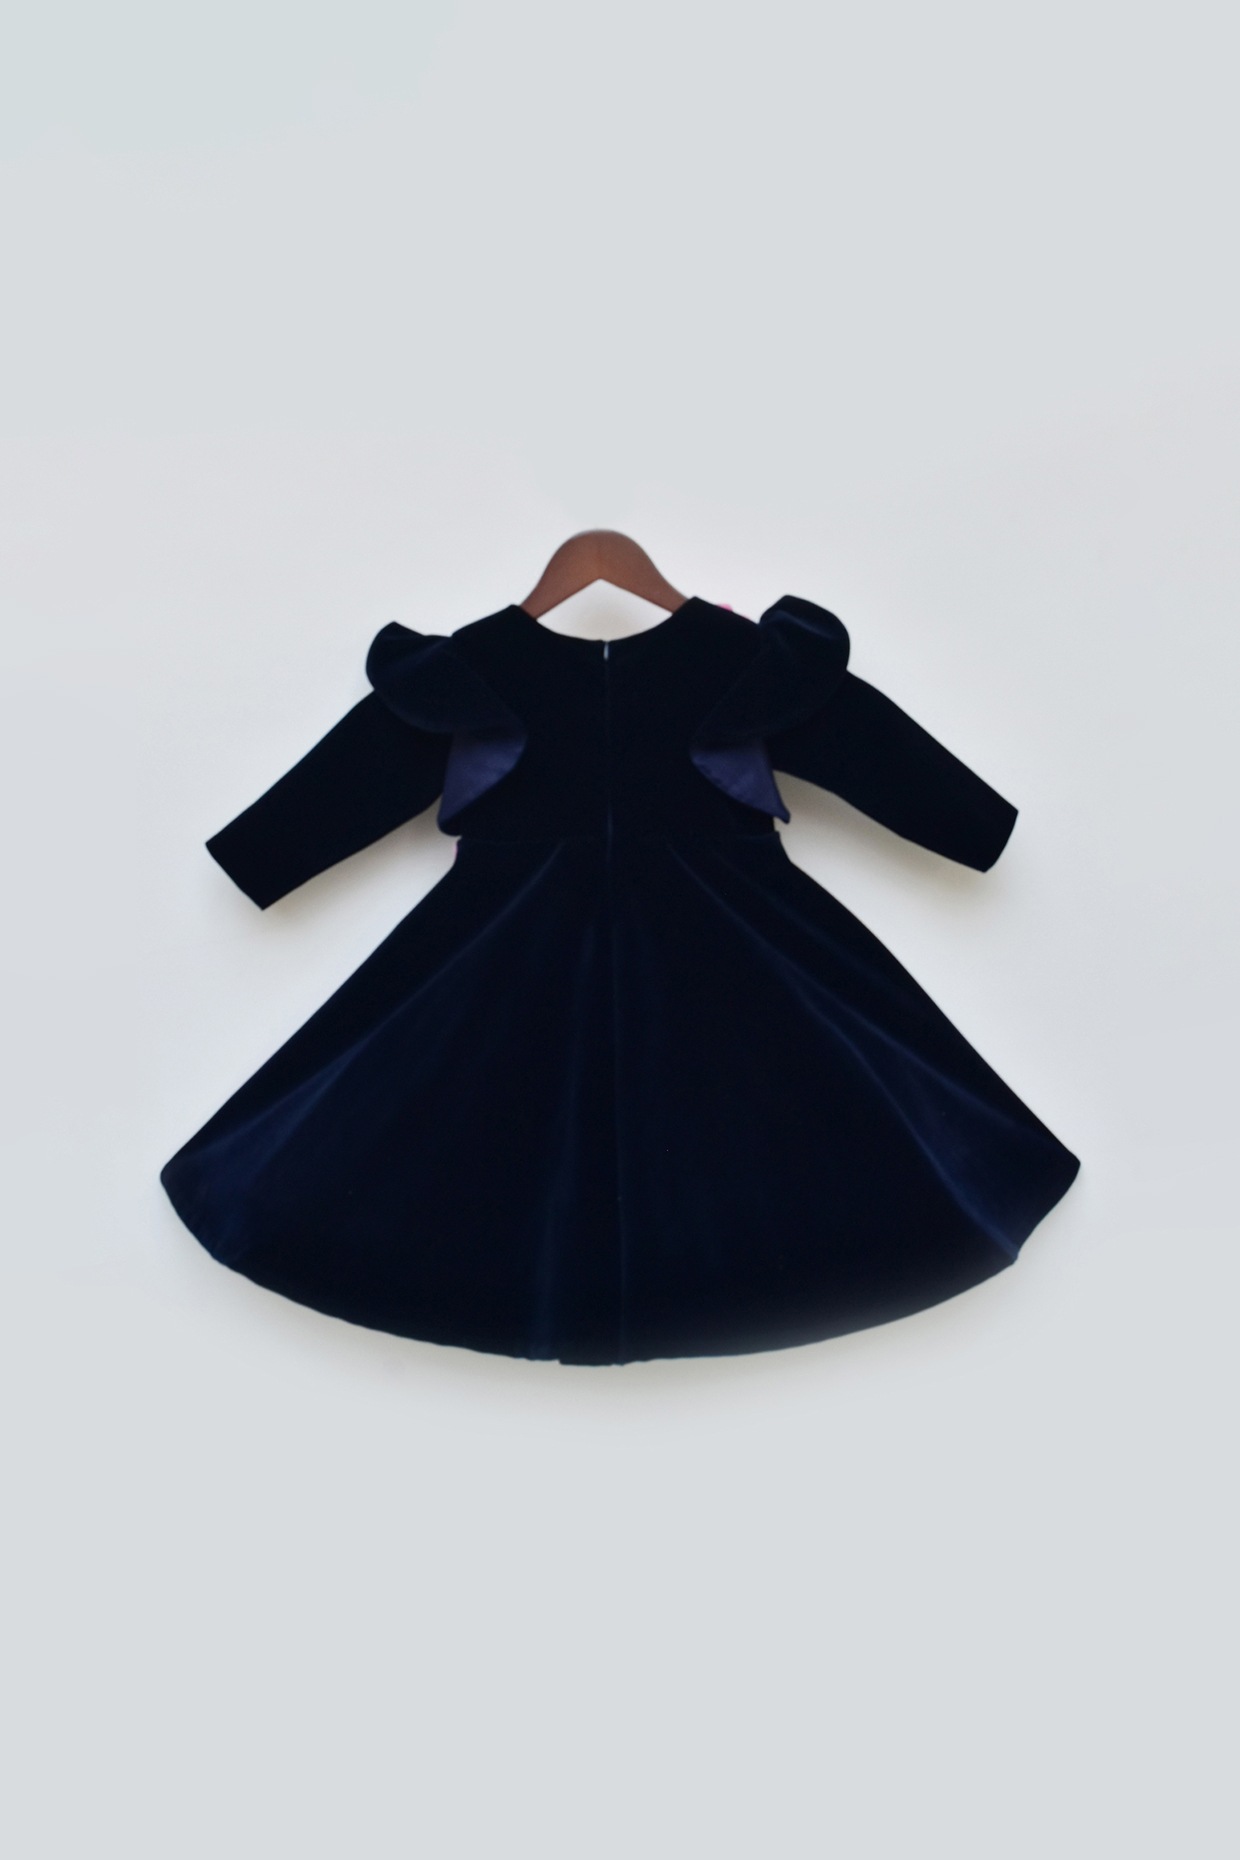 Velvet Fabrics Party Wear Dresses For Kids||Stylish Velvet Dress Designs  For Baby Girls - YouTube